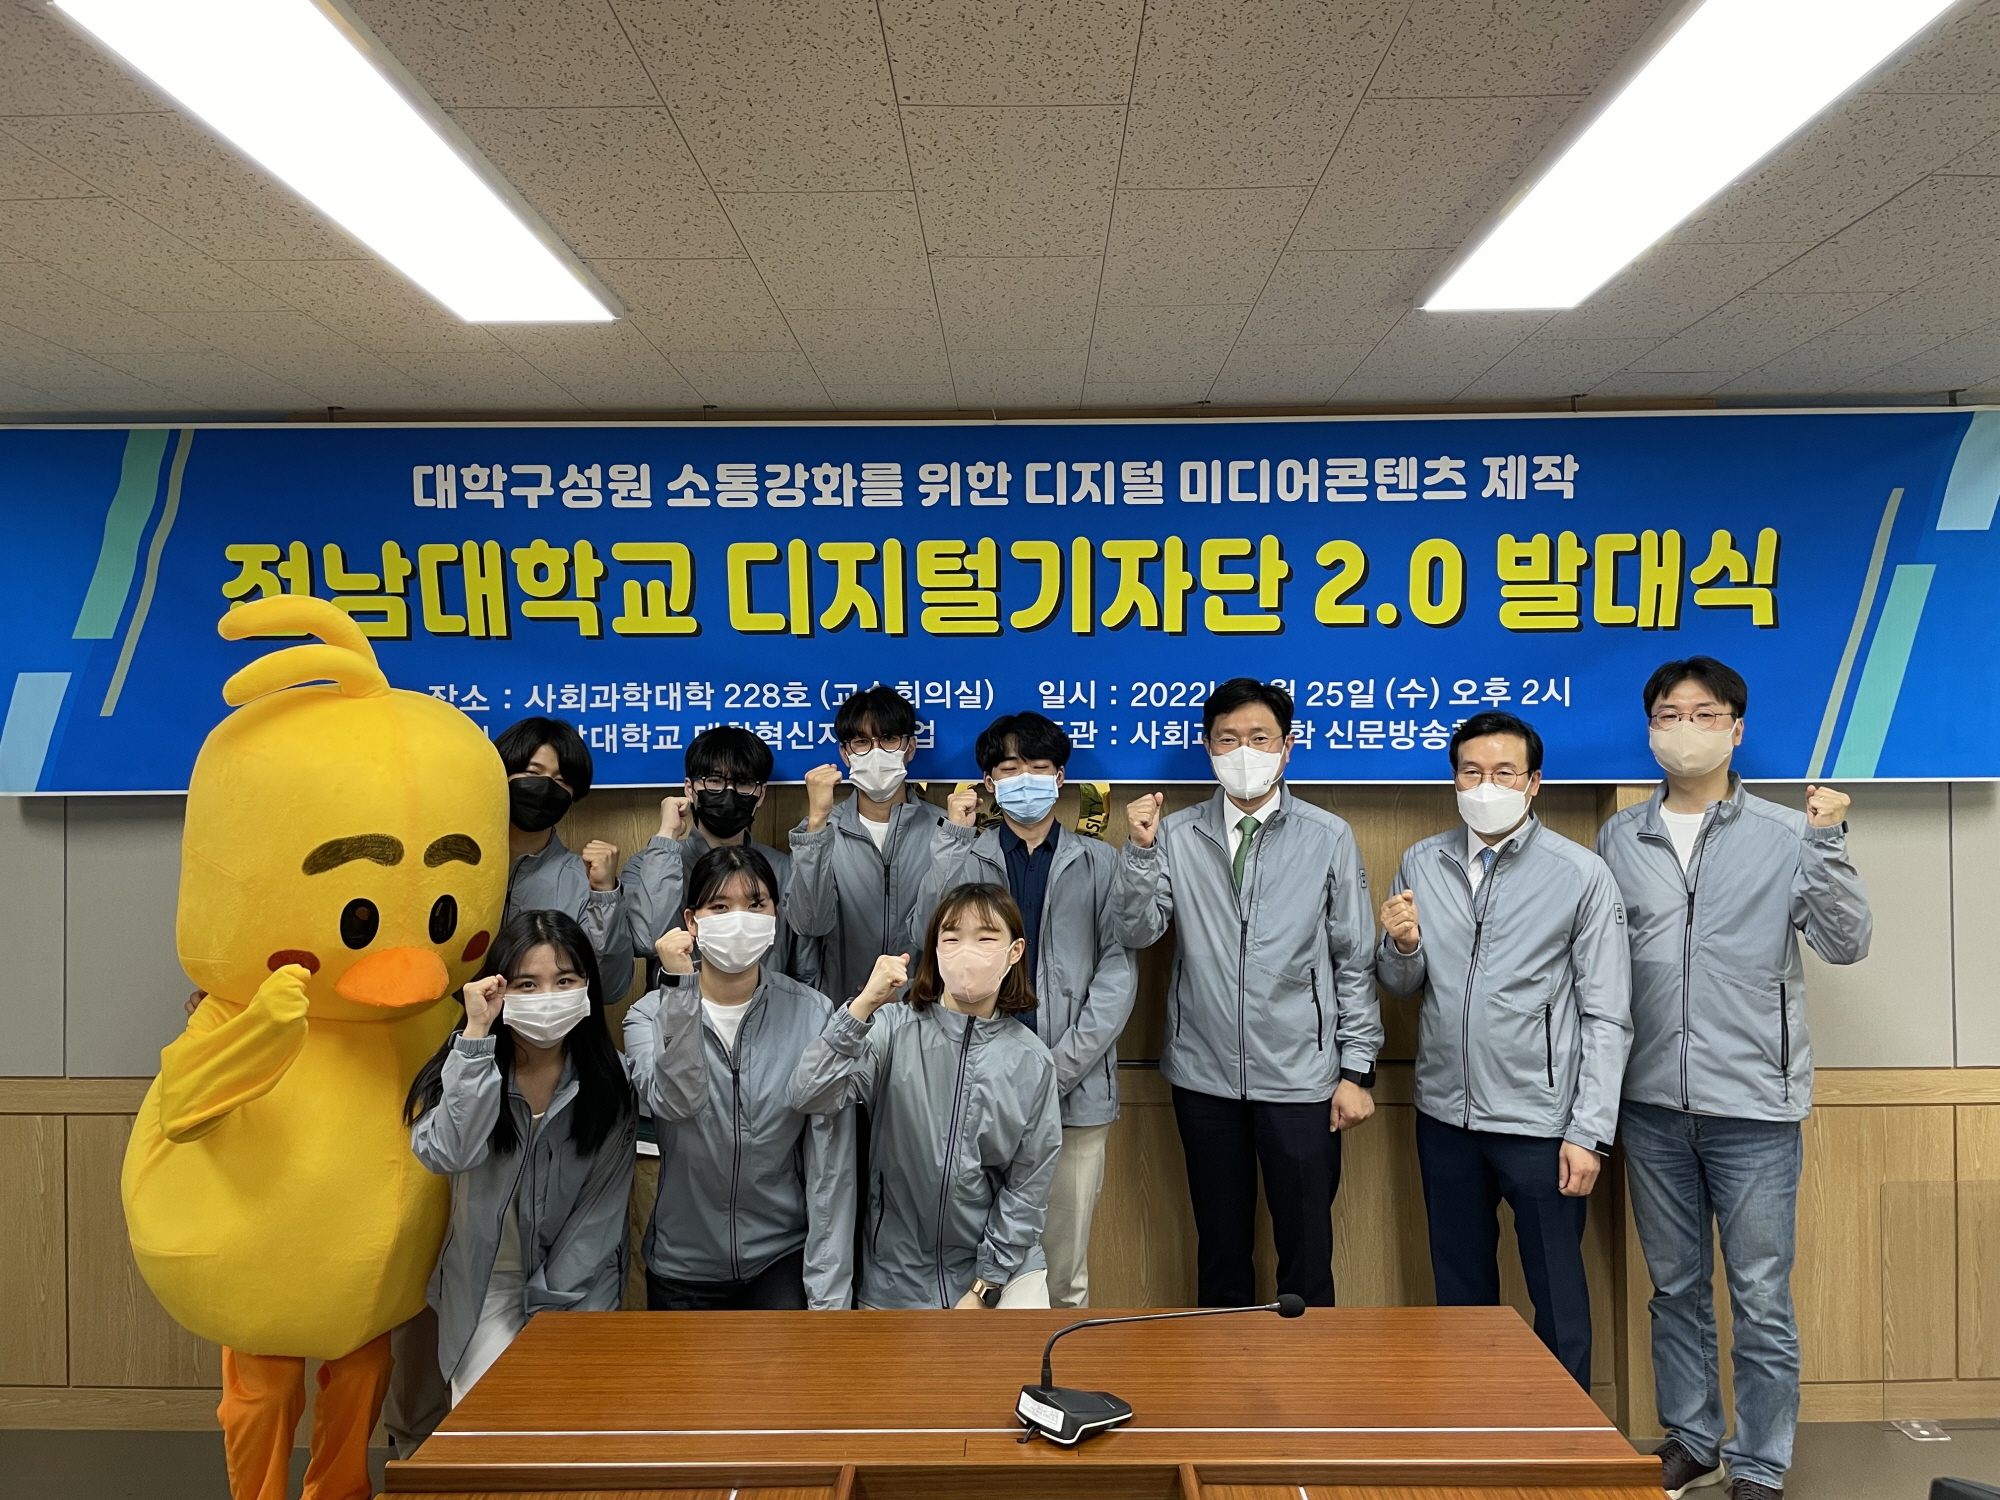 다양한 학교 소식 알리는 ‘전남대학교 디지털기자단 2.0’ 발대식 개최 대표이미지